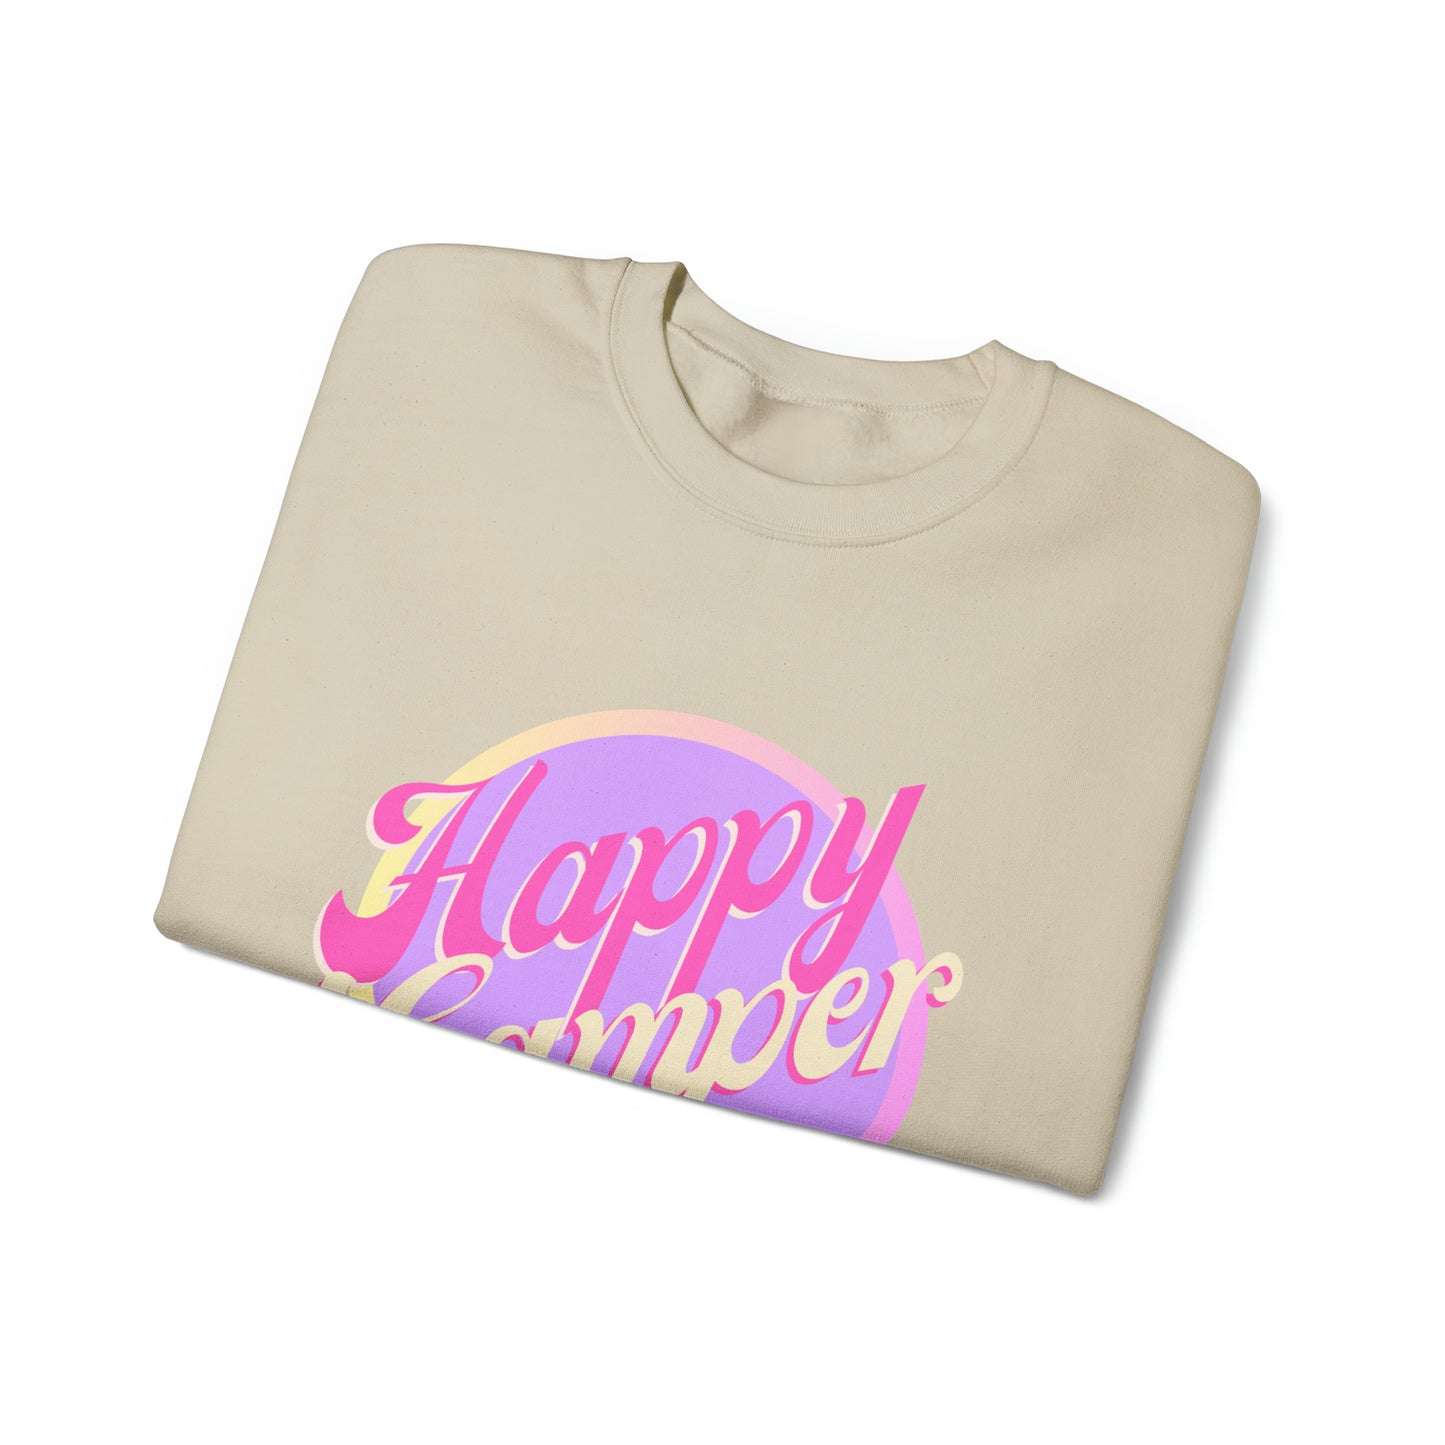 HAPPY CAMPER SMILEY crewneck sweatshirt